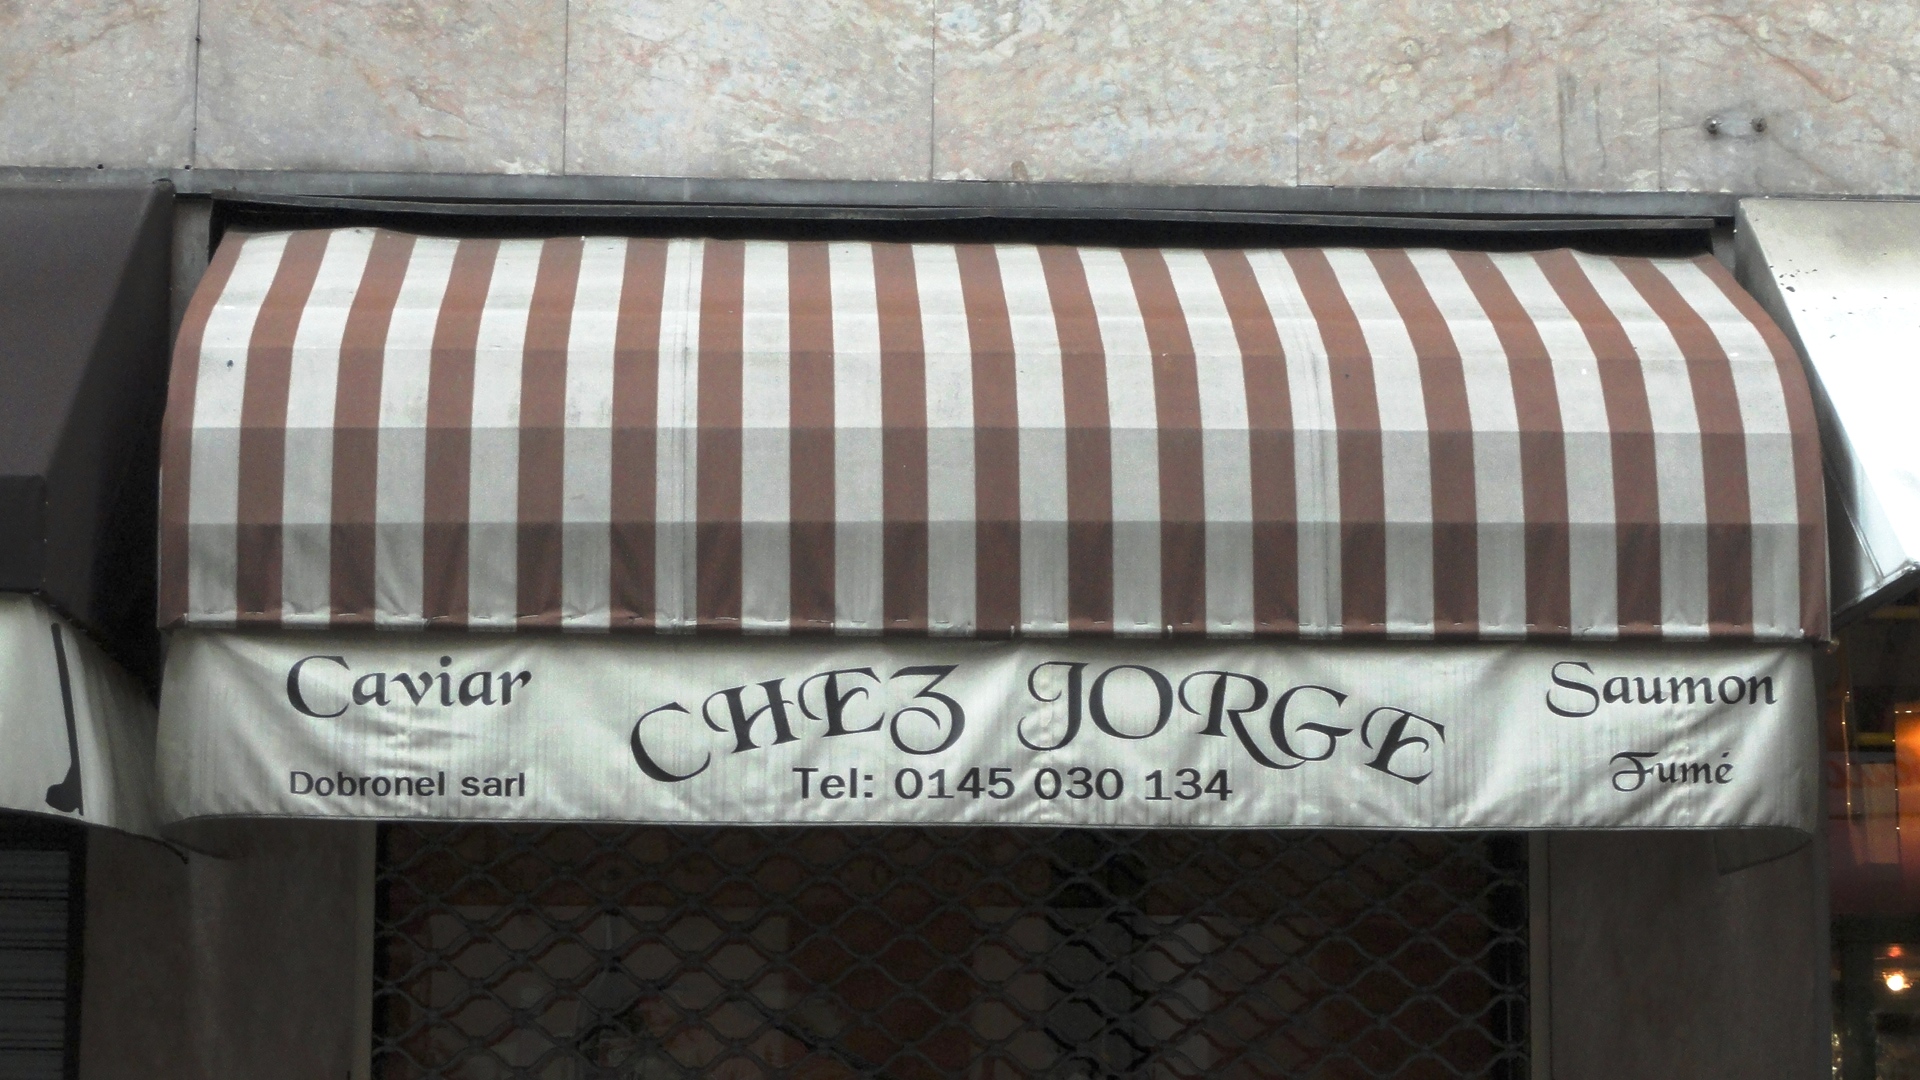 Chez Jorge - Rue Dufrenoy, Paris 16e